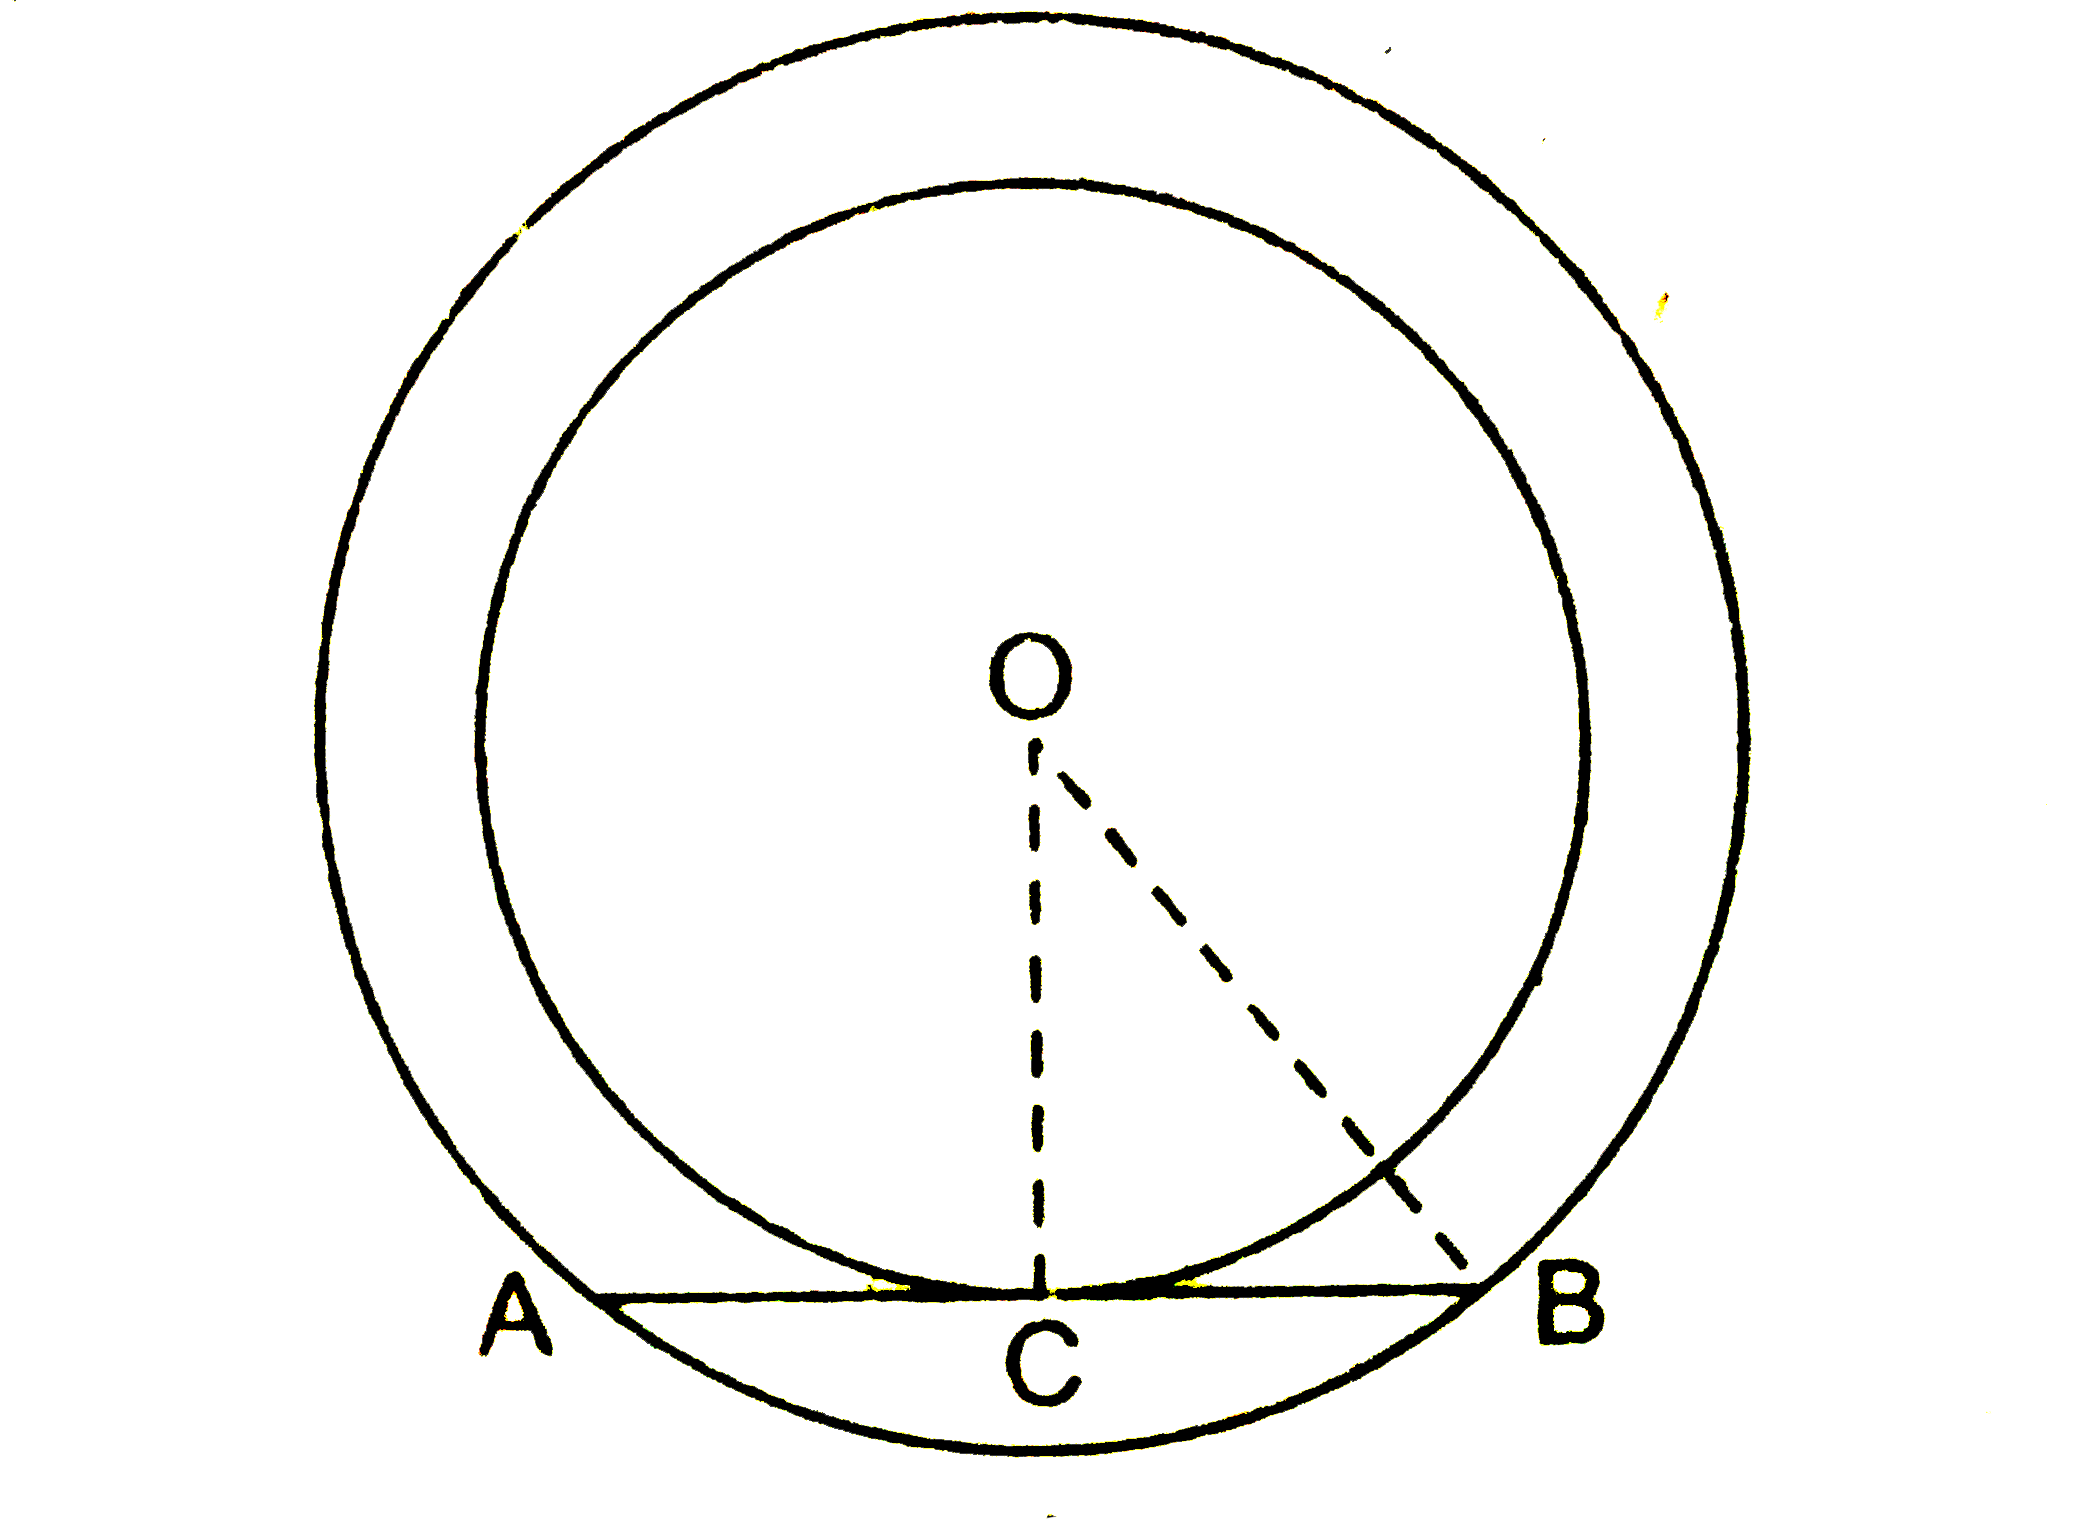 15 सेमी और 17 सेमी त्रिज्या के दो समकेन्द्रीय वृत्त  हैं। यदि बड़े वृत की जीवा AB अन्दर वाले वृत्त हैं। यदि बड़े वृत्त की जीवा AB अन्दर वाले वृत्त को बिन्दु C पर स्पर्श करती हैं, तो जीवा AB की माप ज्ञात कीजिए।